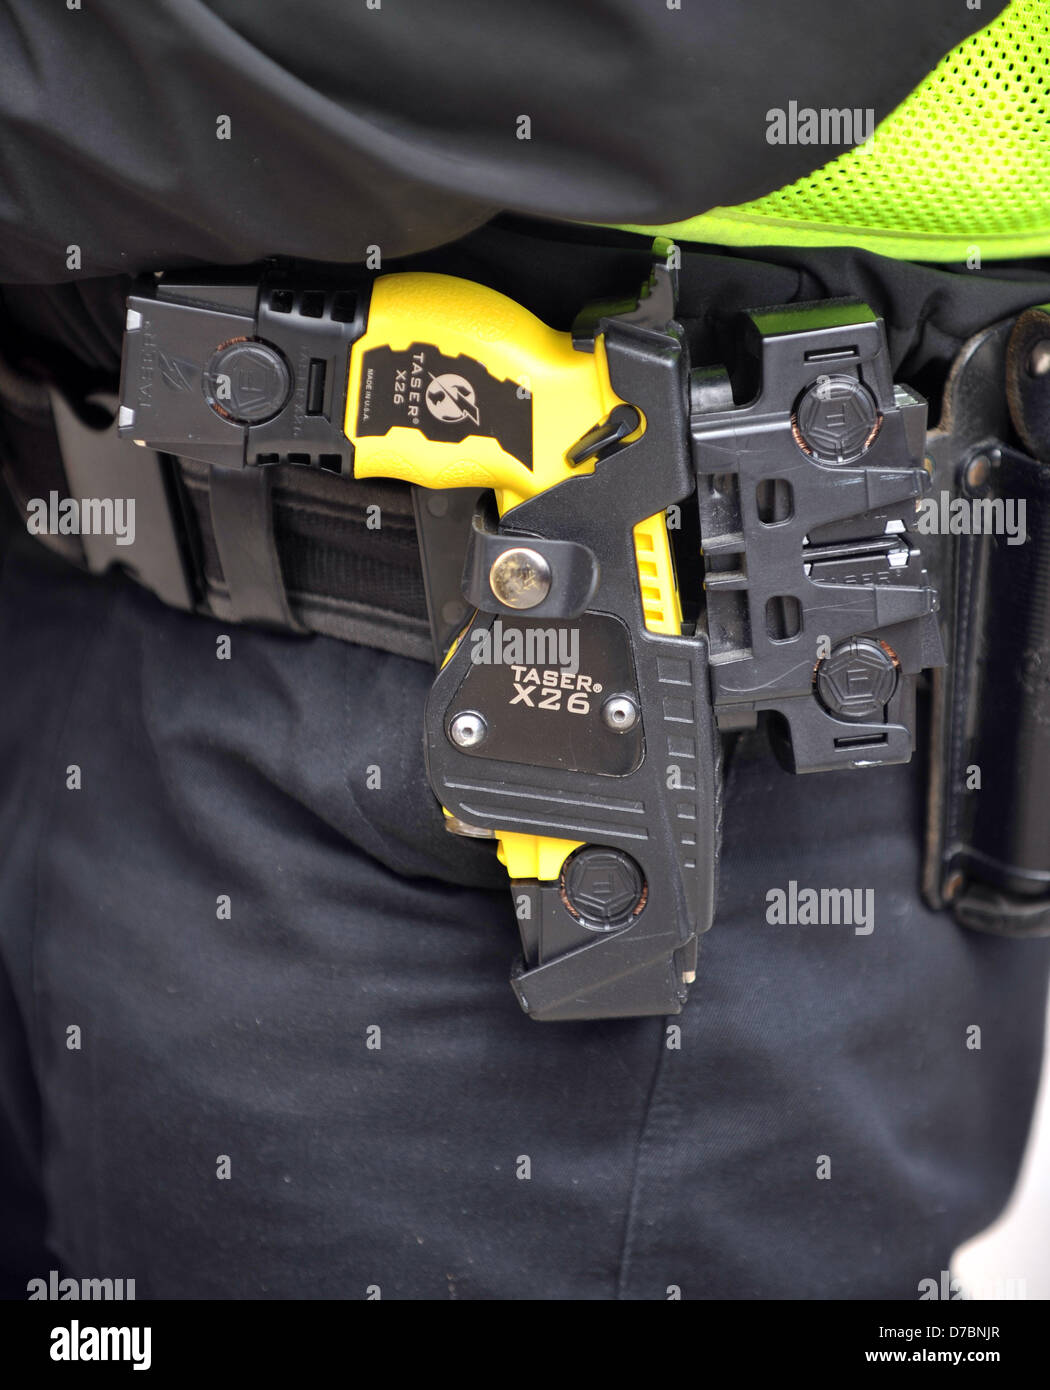 Taser, police taser weapon, X26 taser, UK Stock Photo